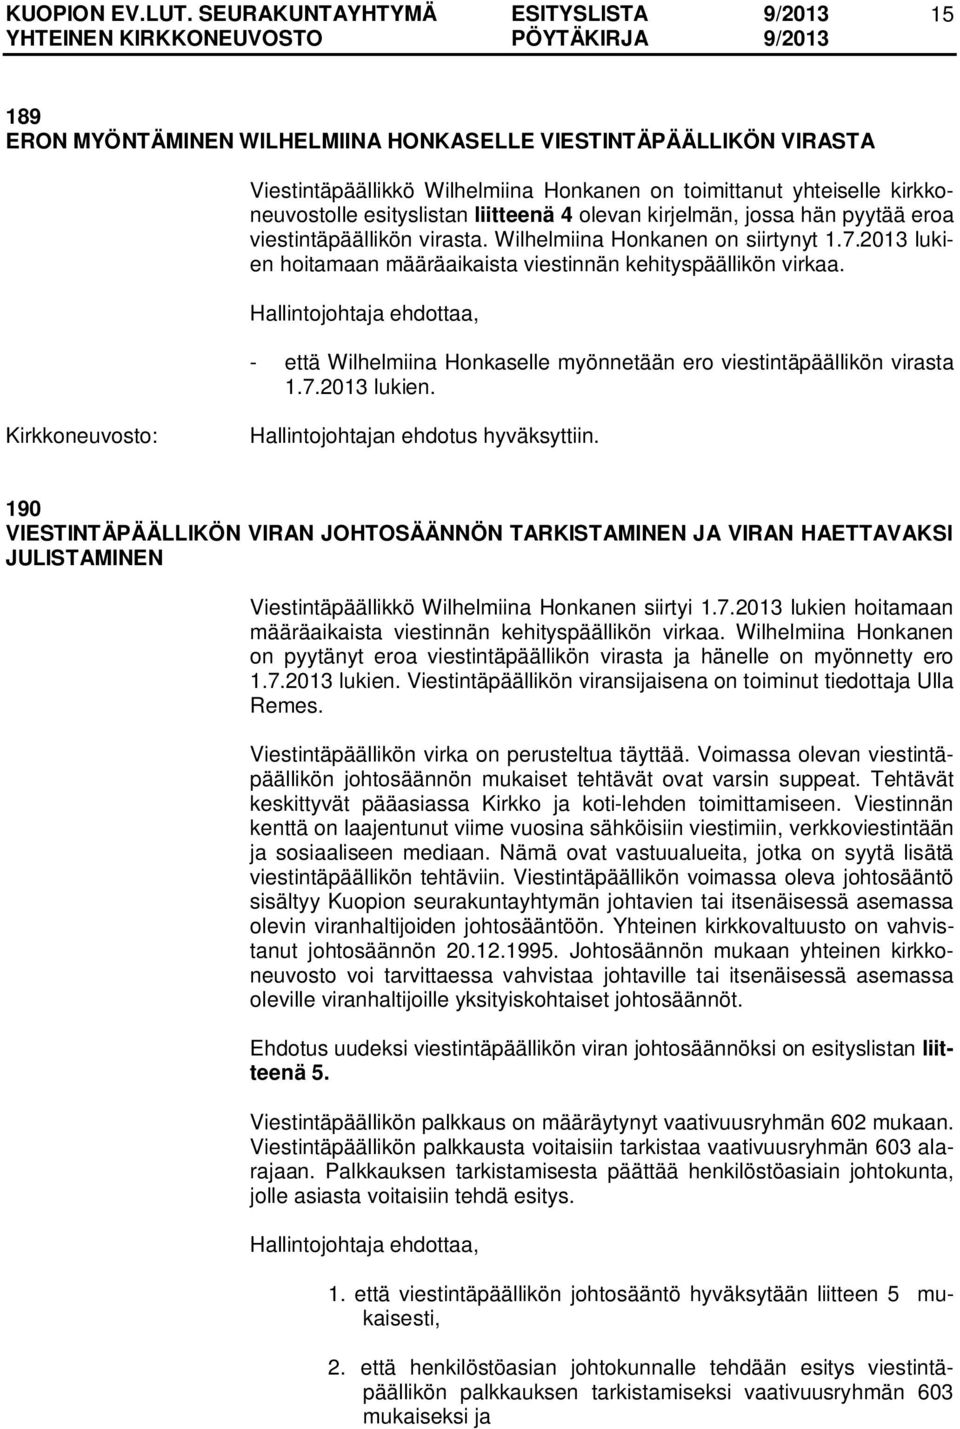 - että Wilhelmiina Honkaselle myönnetään ero viestintäpäällikön virasta 1.7.2013 lukien. Hallintojohtajan ehdotus hyväksyttiin.